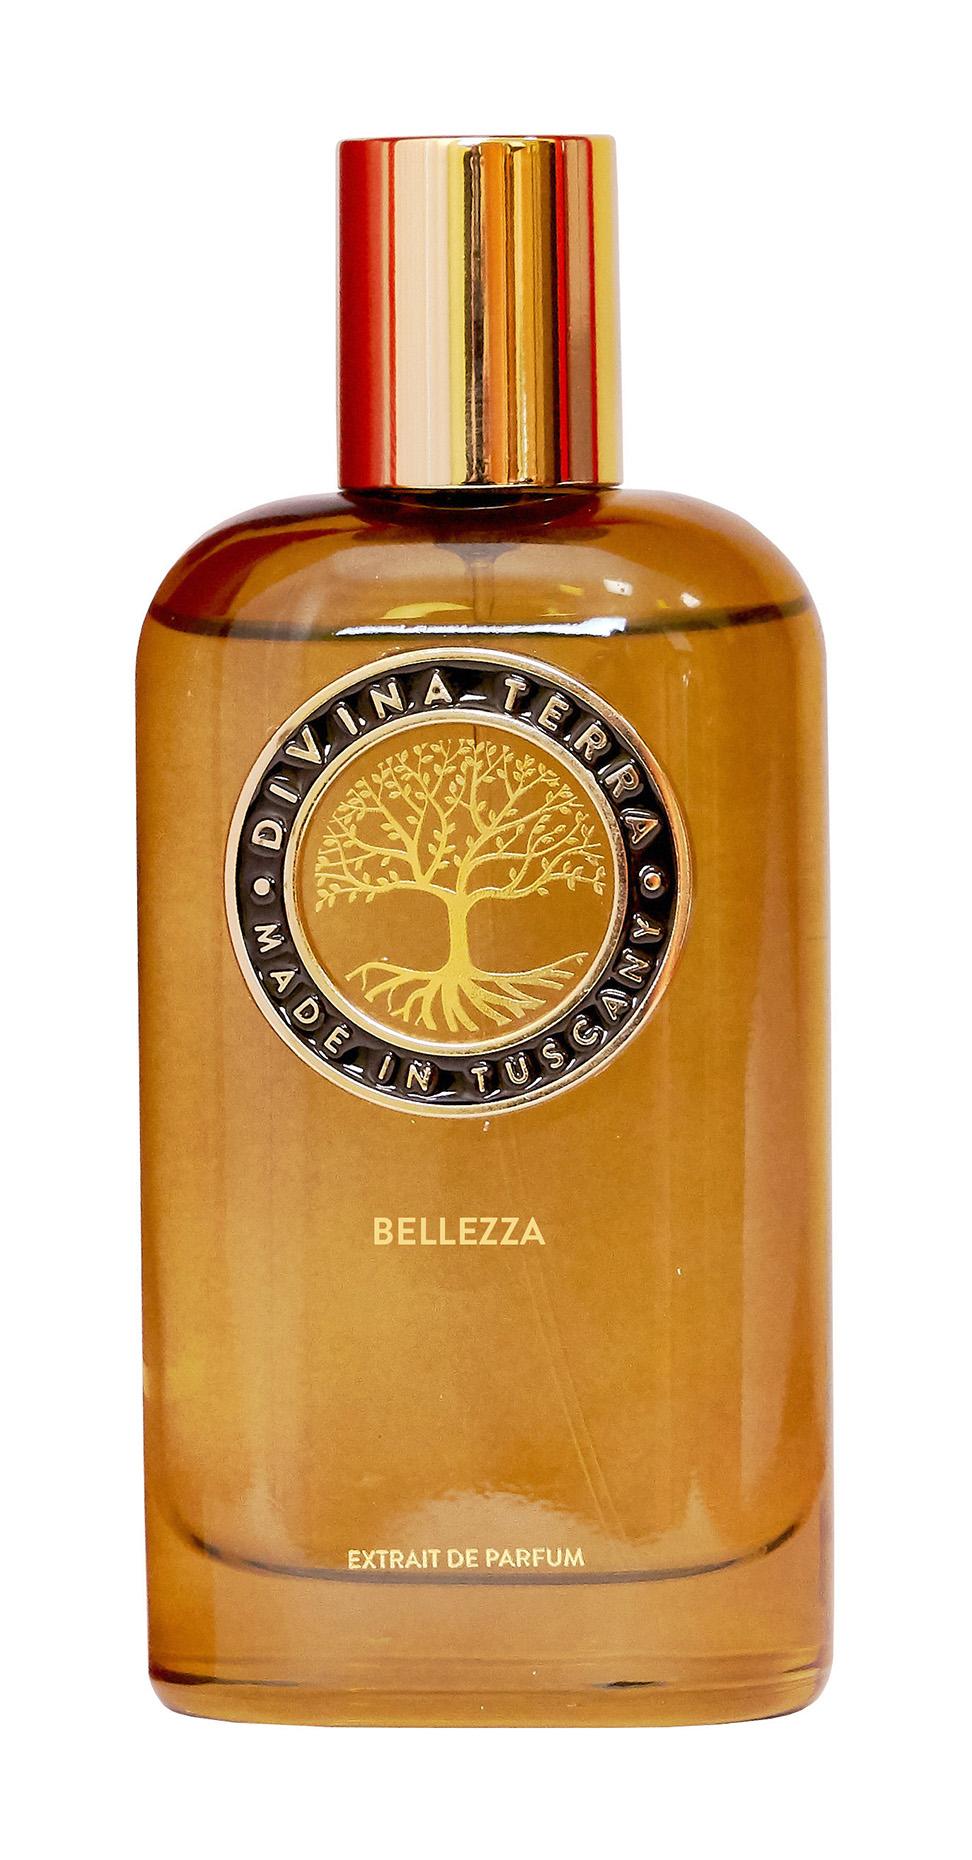 Купить Духи Divina Terra Bellezza Extrait de Parfum, 100 мл